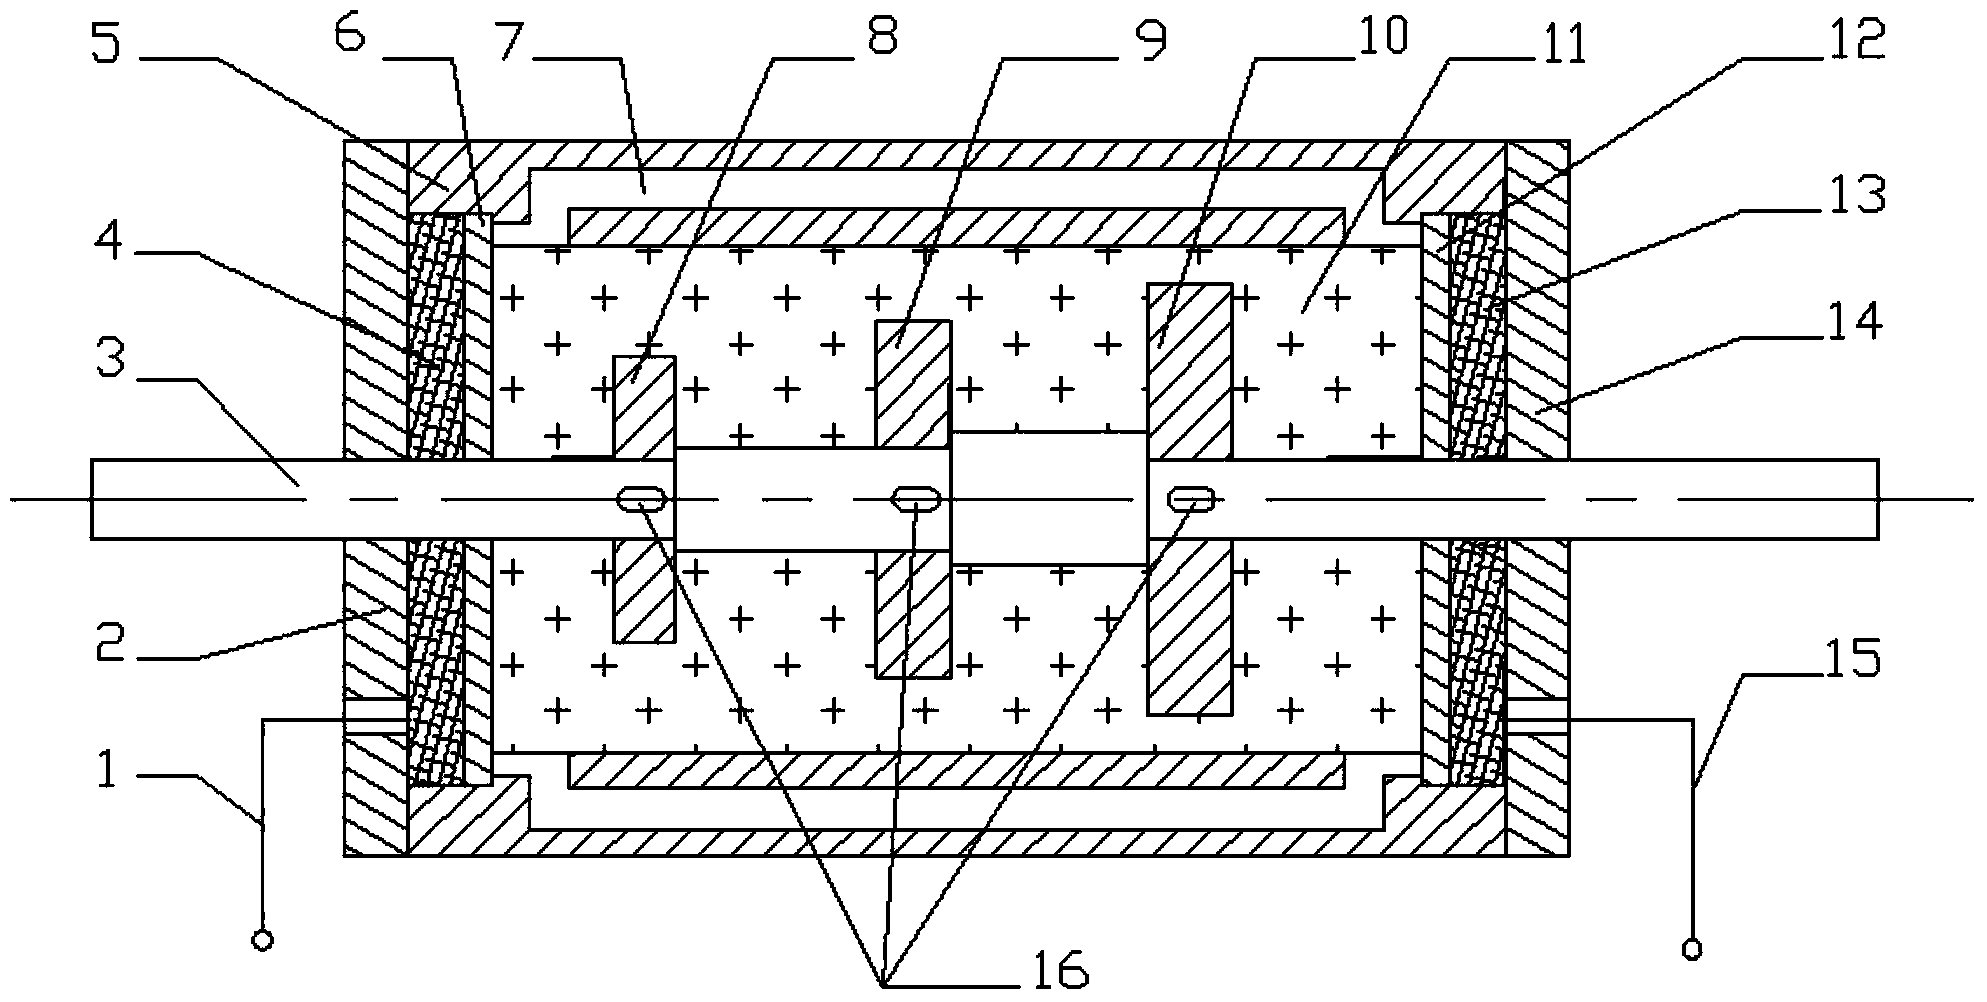 Seven-level adjustable reciprocating type electrorheological fluid damper